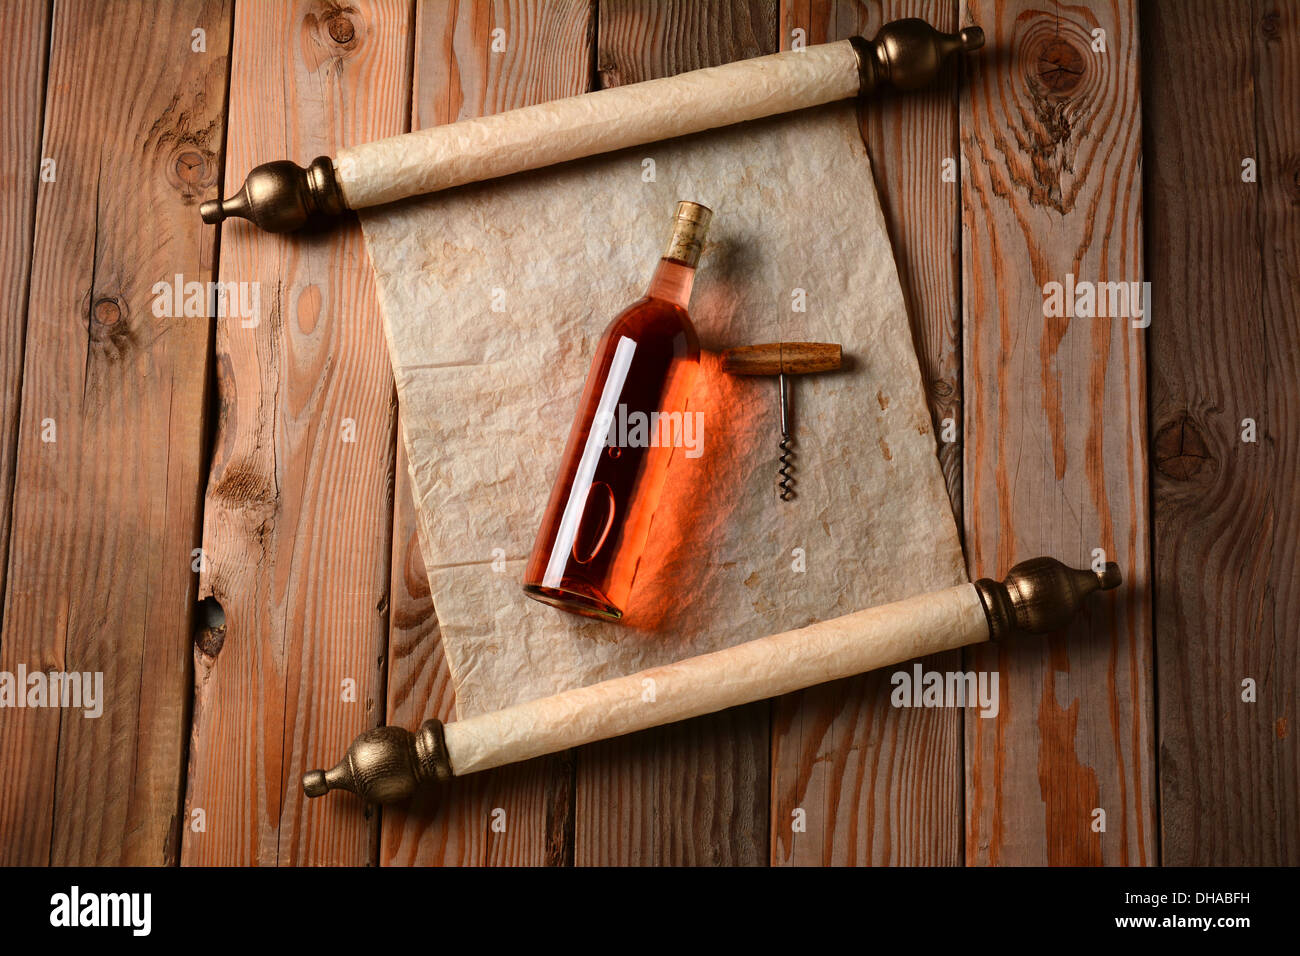 Eine Flasche Blush Wein und Korkenzieher Verlegung auf eine Schriftrolle Backpapier auf einem rustikalen Holzboden. Stockfoto